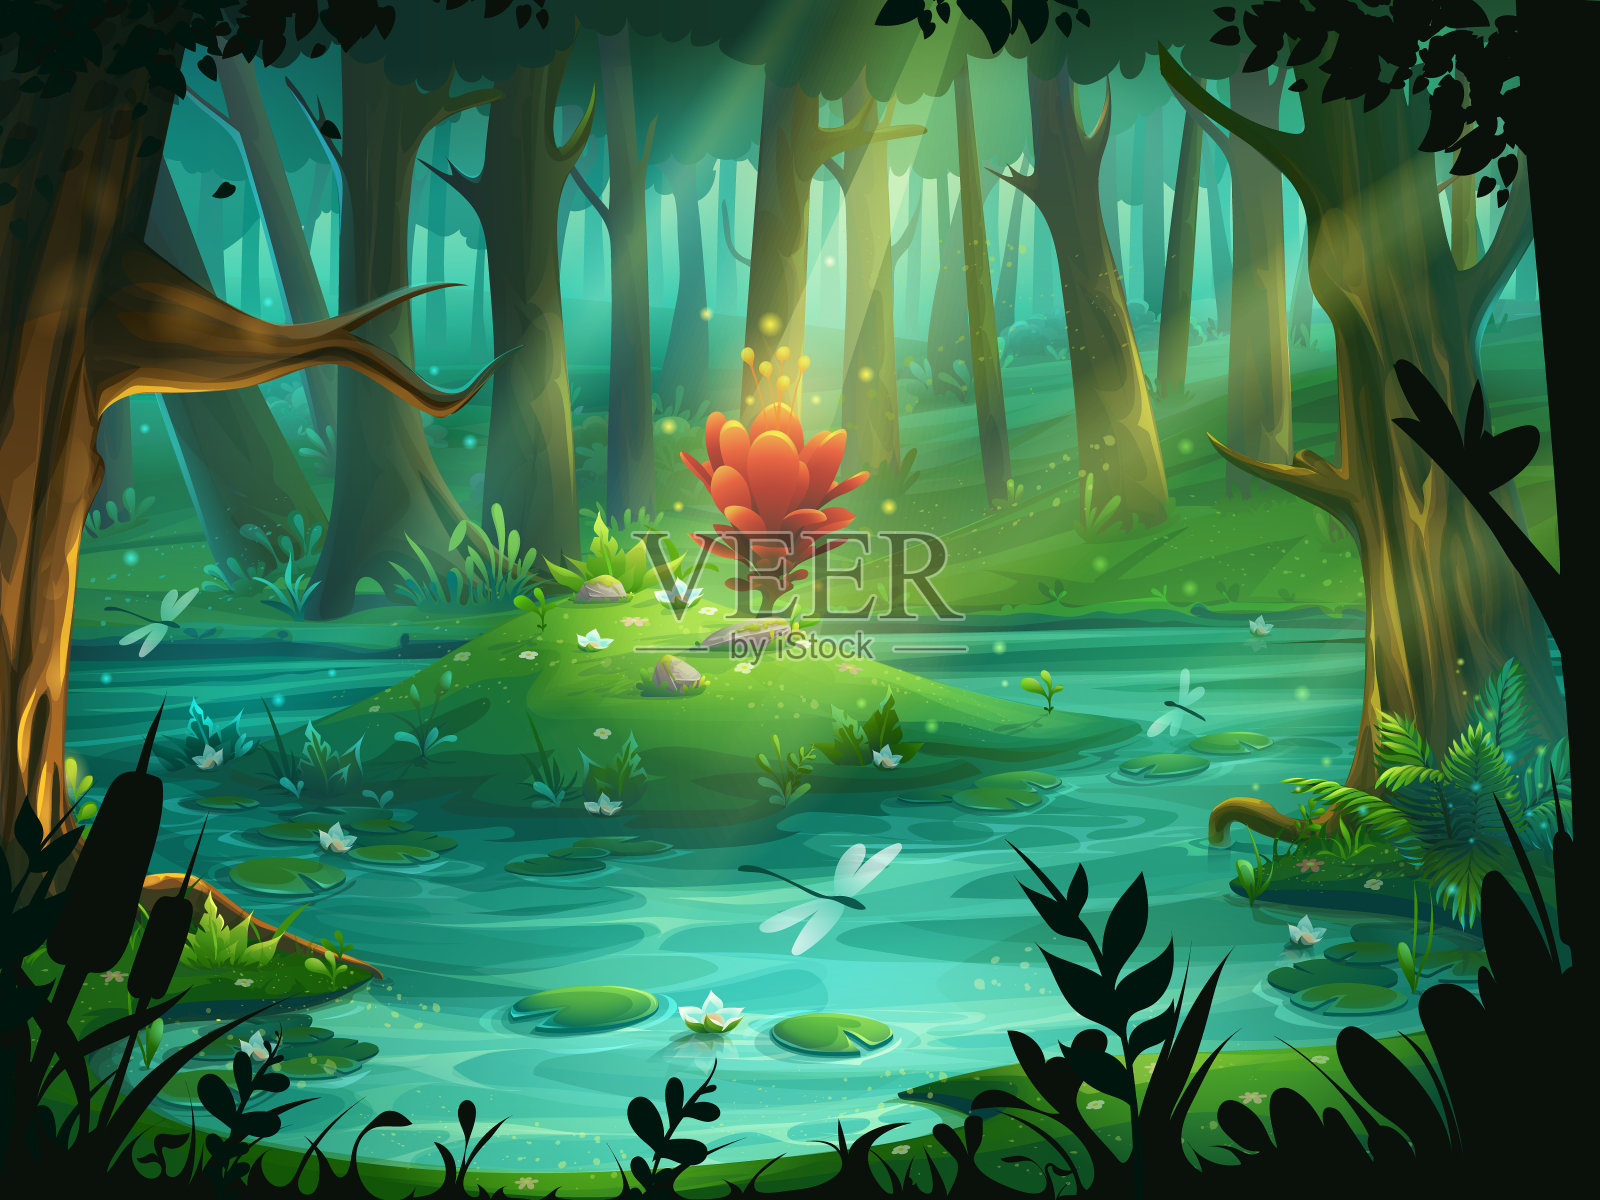 《猩红色花》在森林沼泽中的一个小岛上插画图片素材